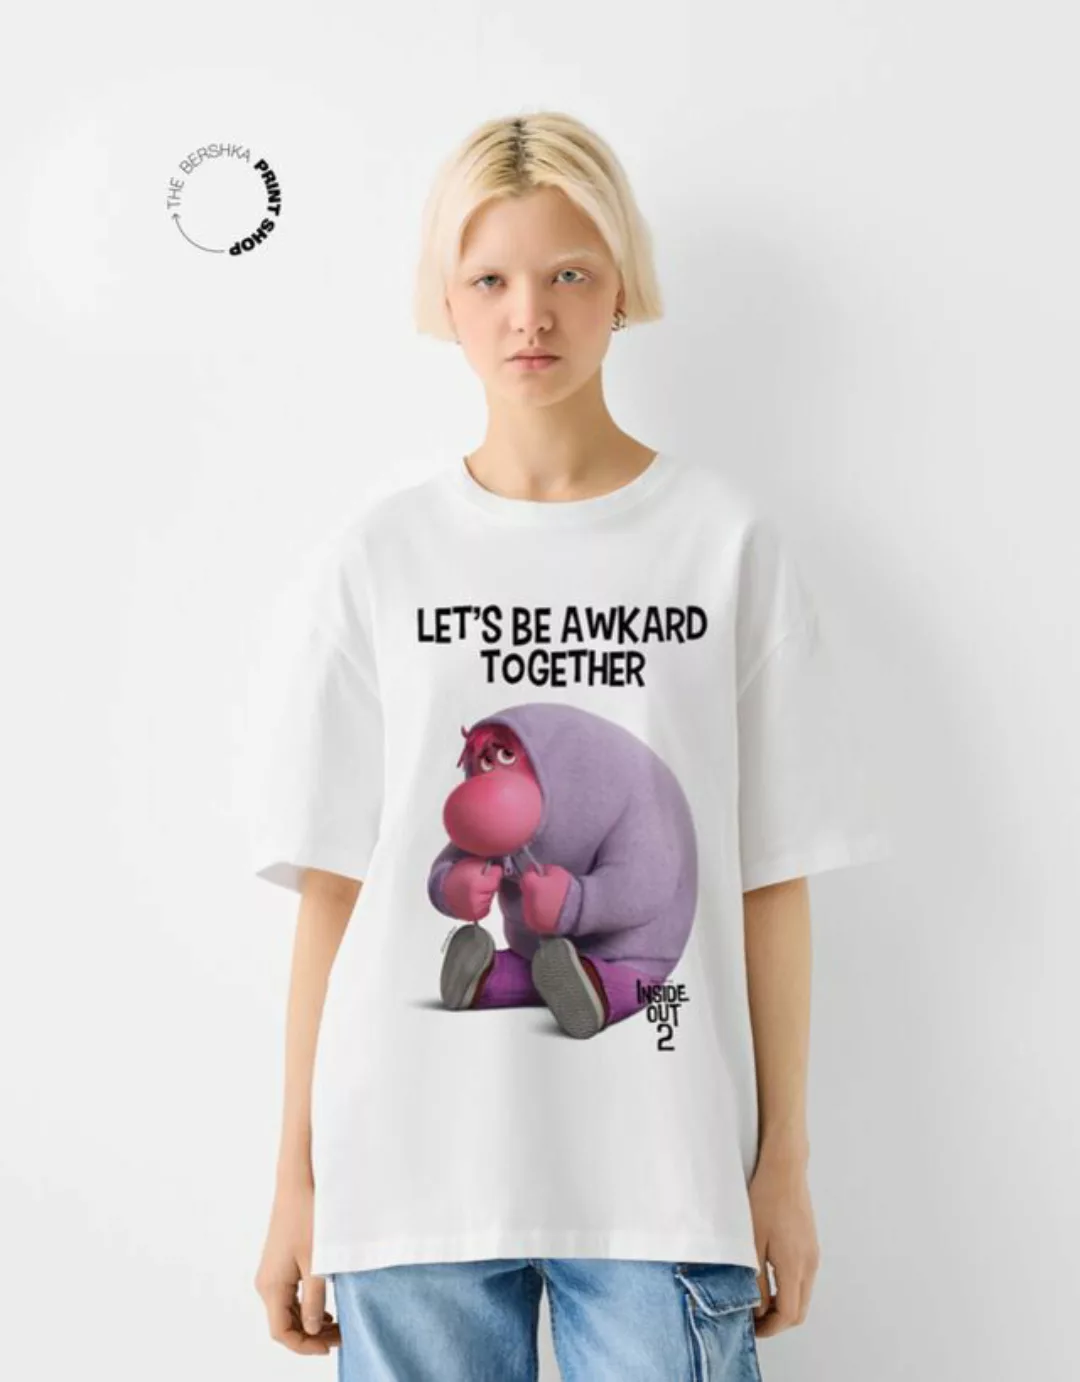 Bershka T-Shirt Inside Out 2 Mit Kurzen Ärmeln Damen Xl Weiss günstig online kaufen